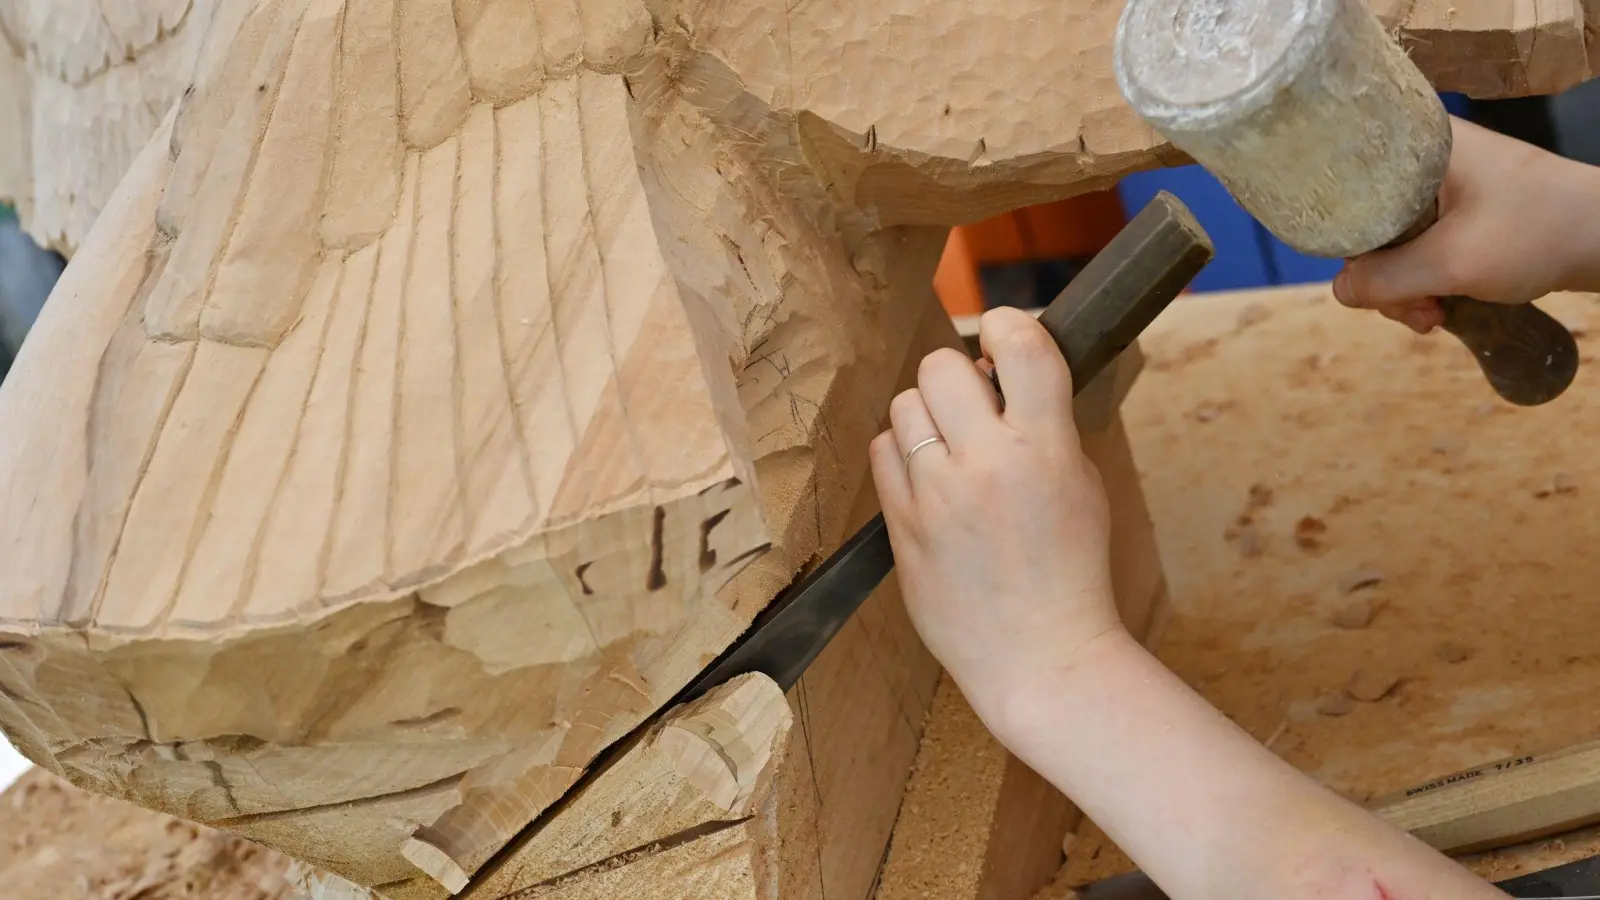 An den Schnitzschulen erlernt der Nachwuchs nach wie vor das Handwerk mit Klöpfel und Bildhauereisen. (Foto: Angelika Warmuth/dpa)